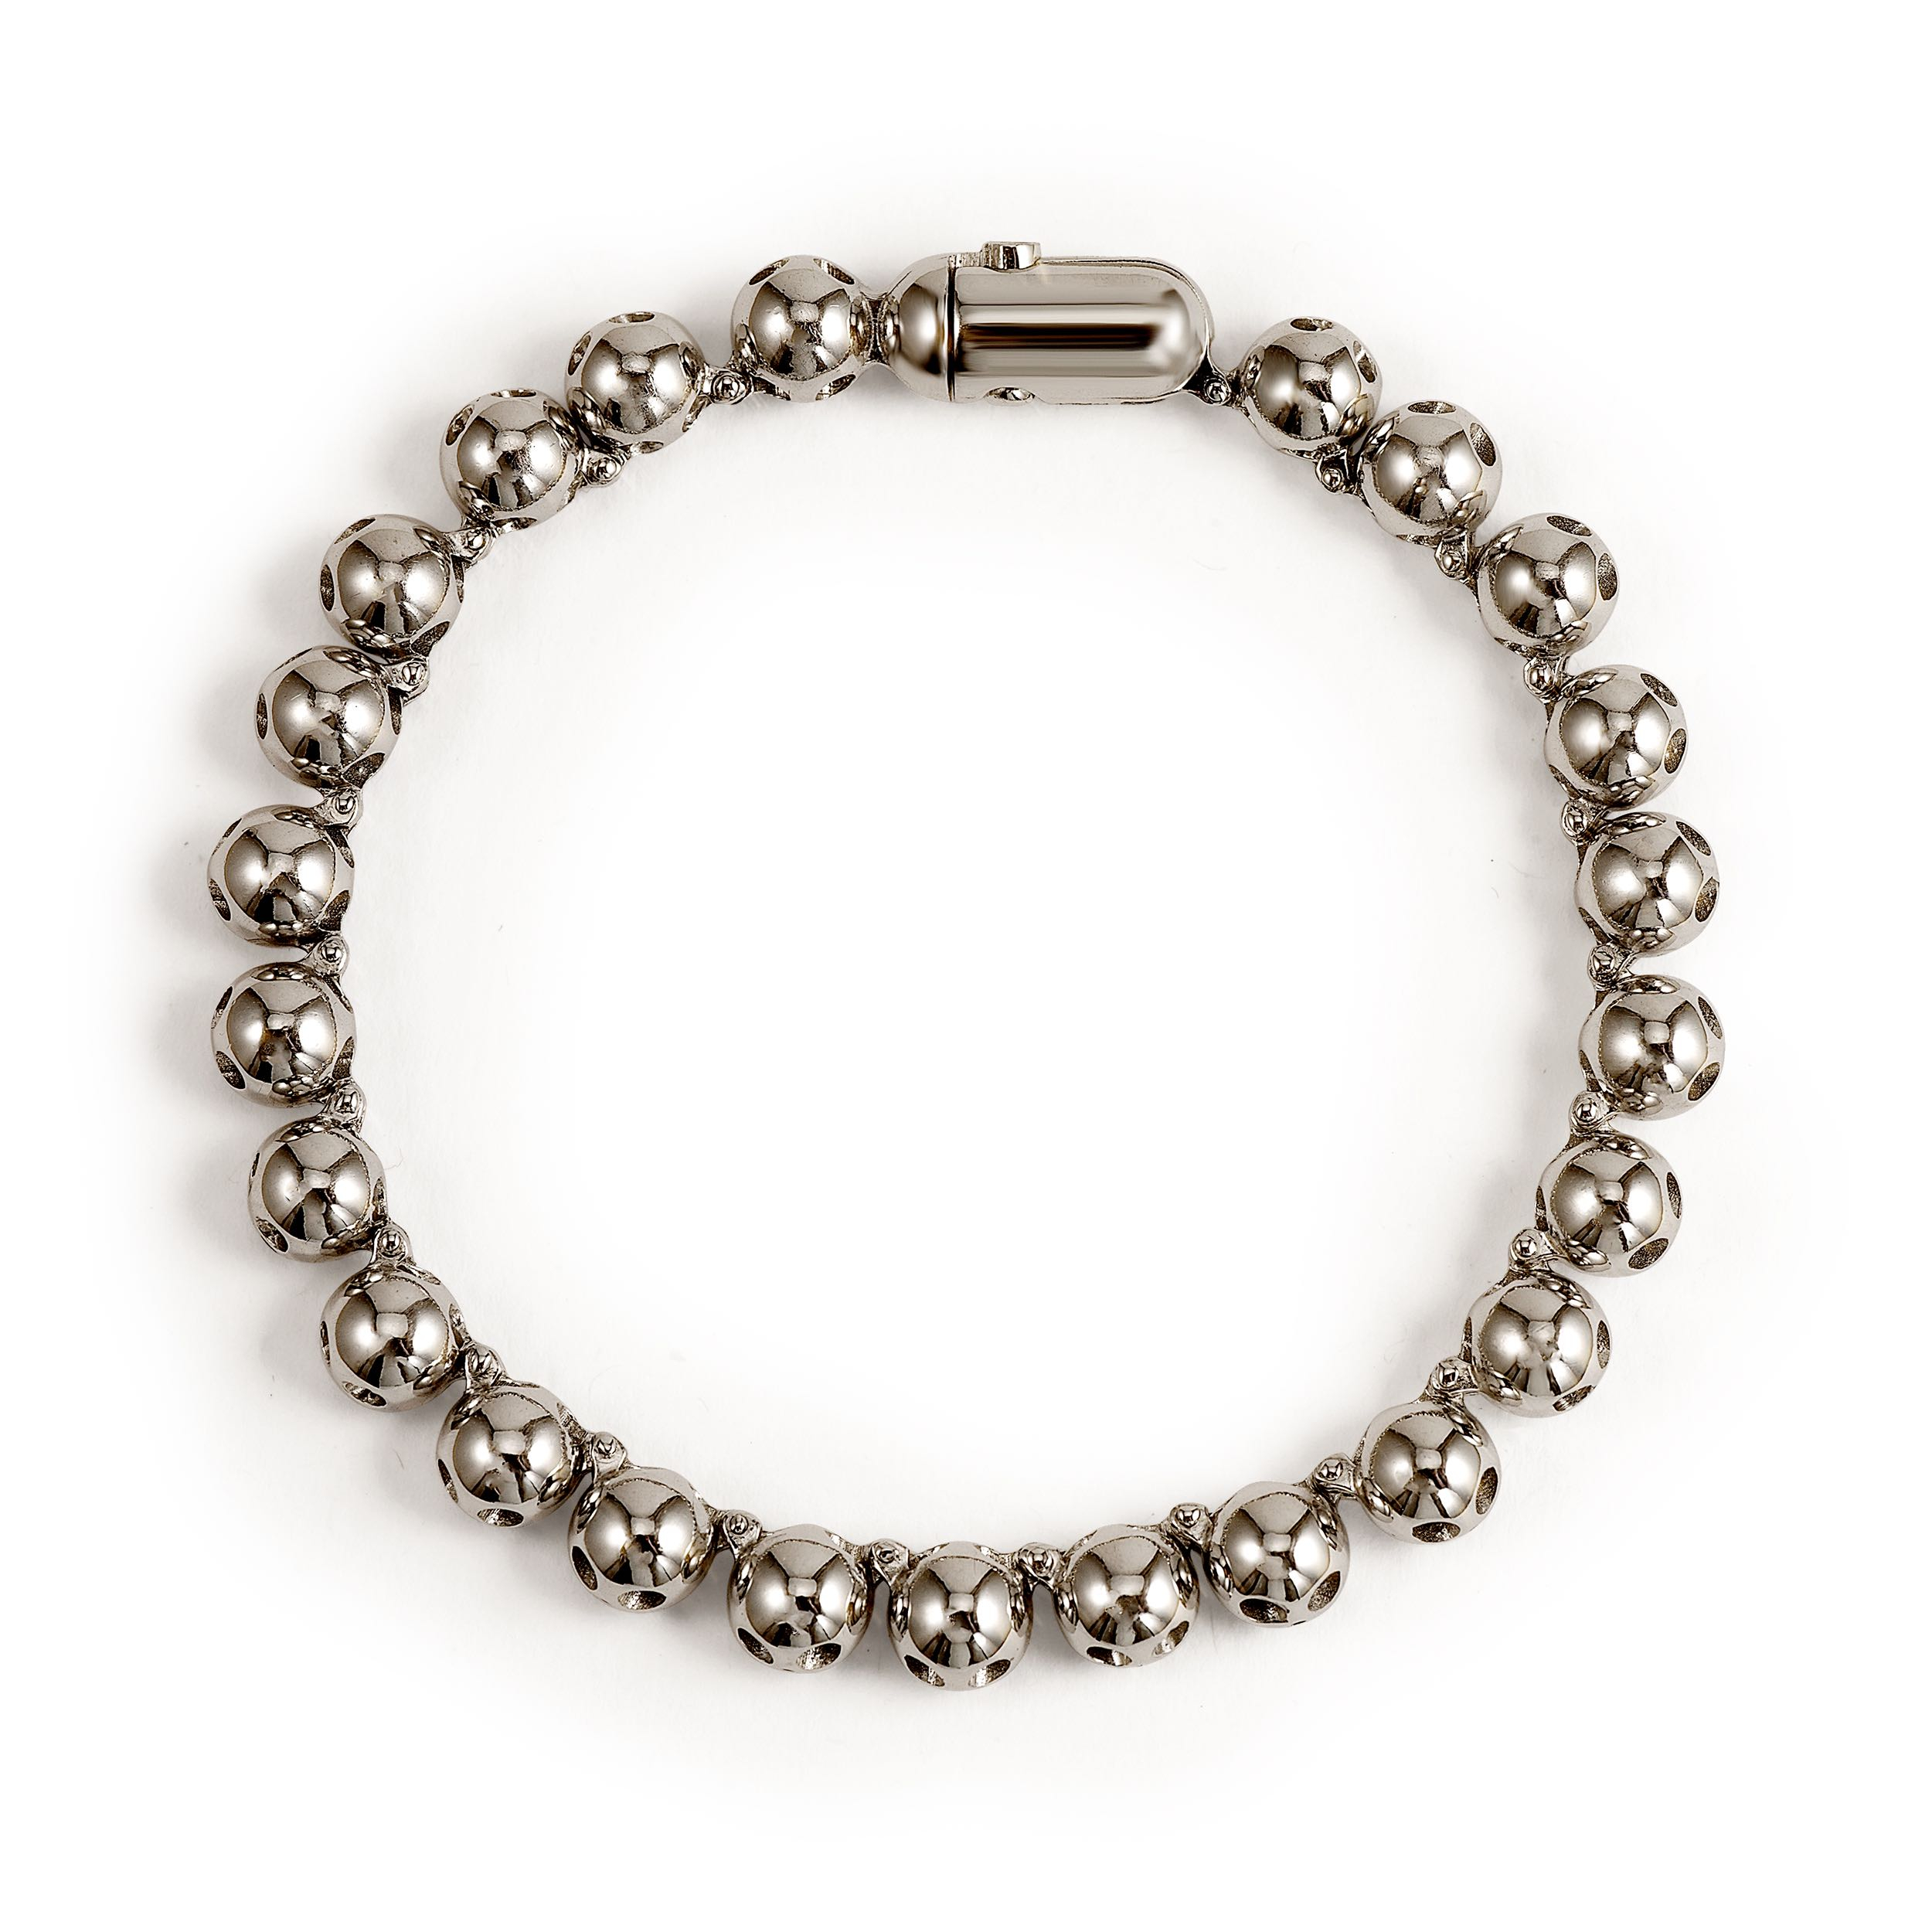 Pirata Silver Skull Bracelet - $560 - Silver Italian Men's Bracelets ...